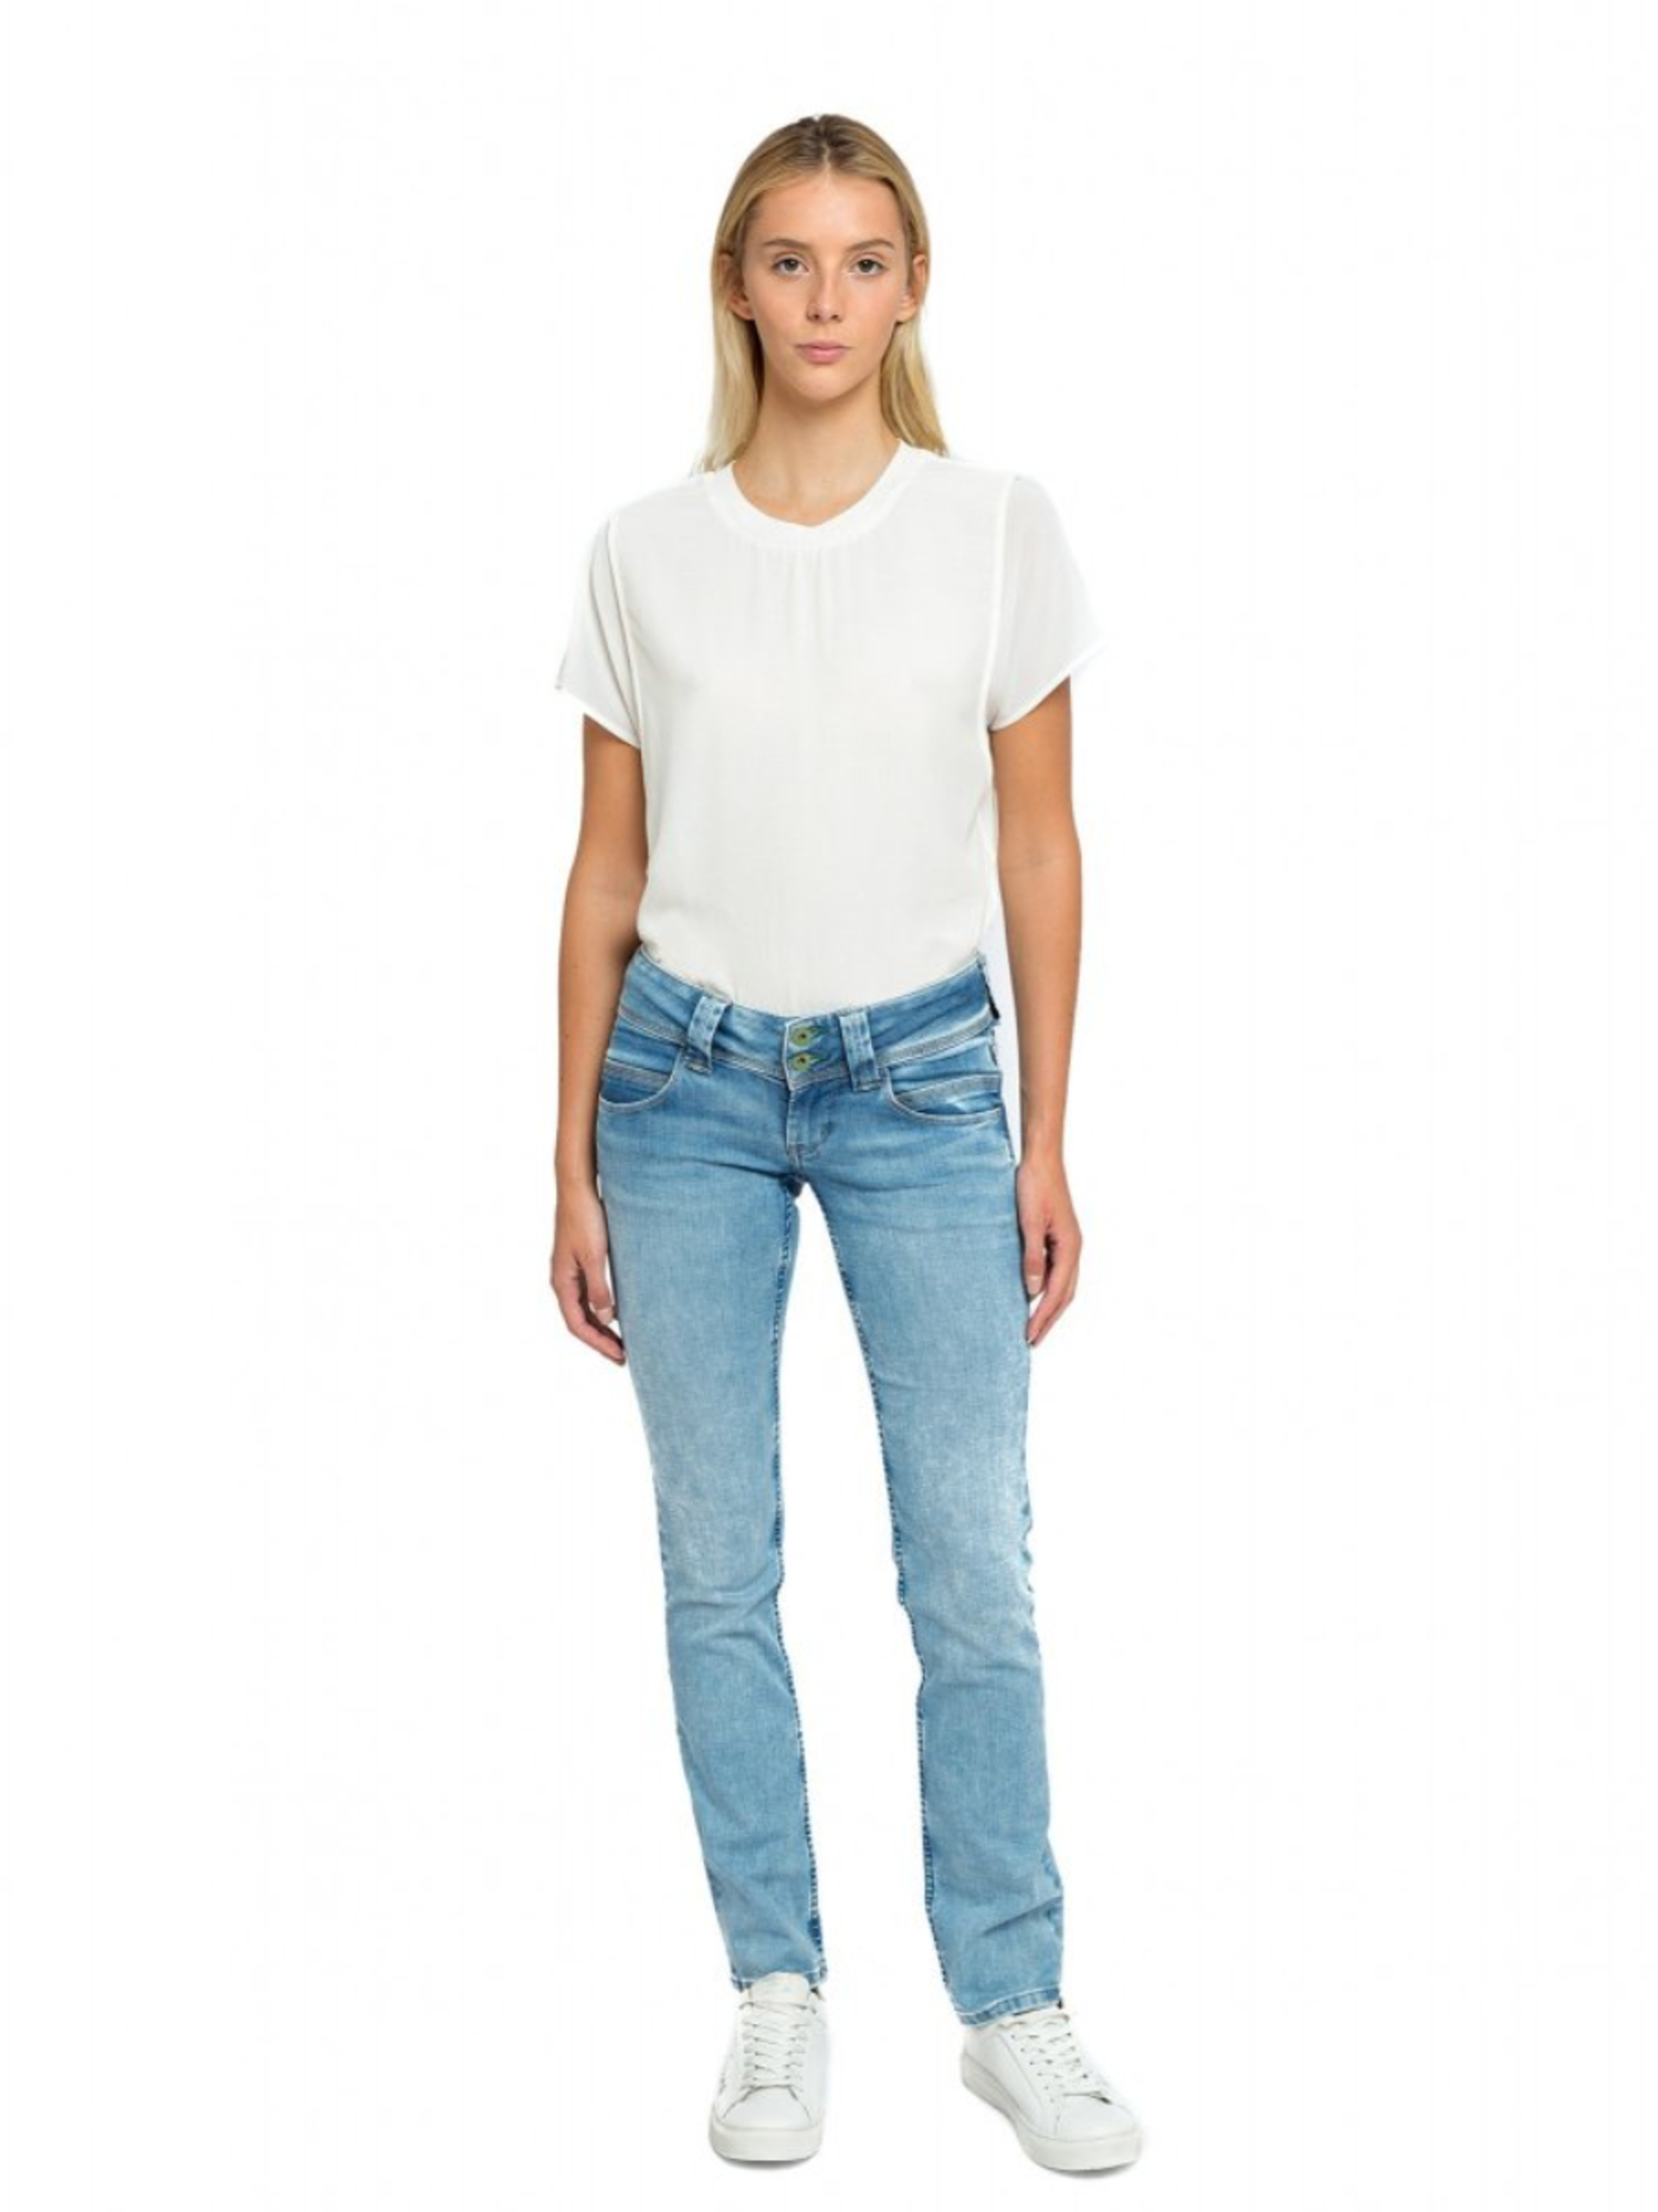 Pepe Jeans dámské modré džíny - 30/32 (000)